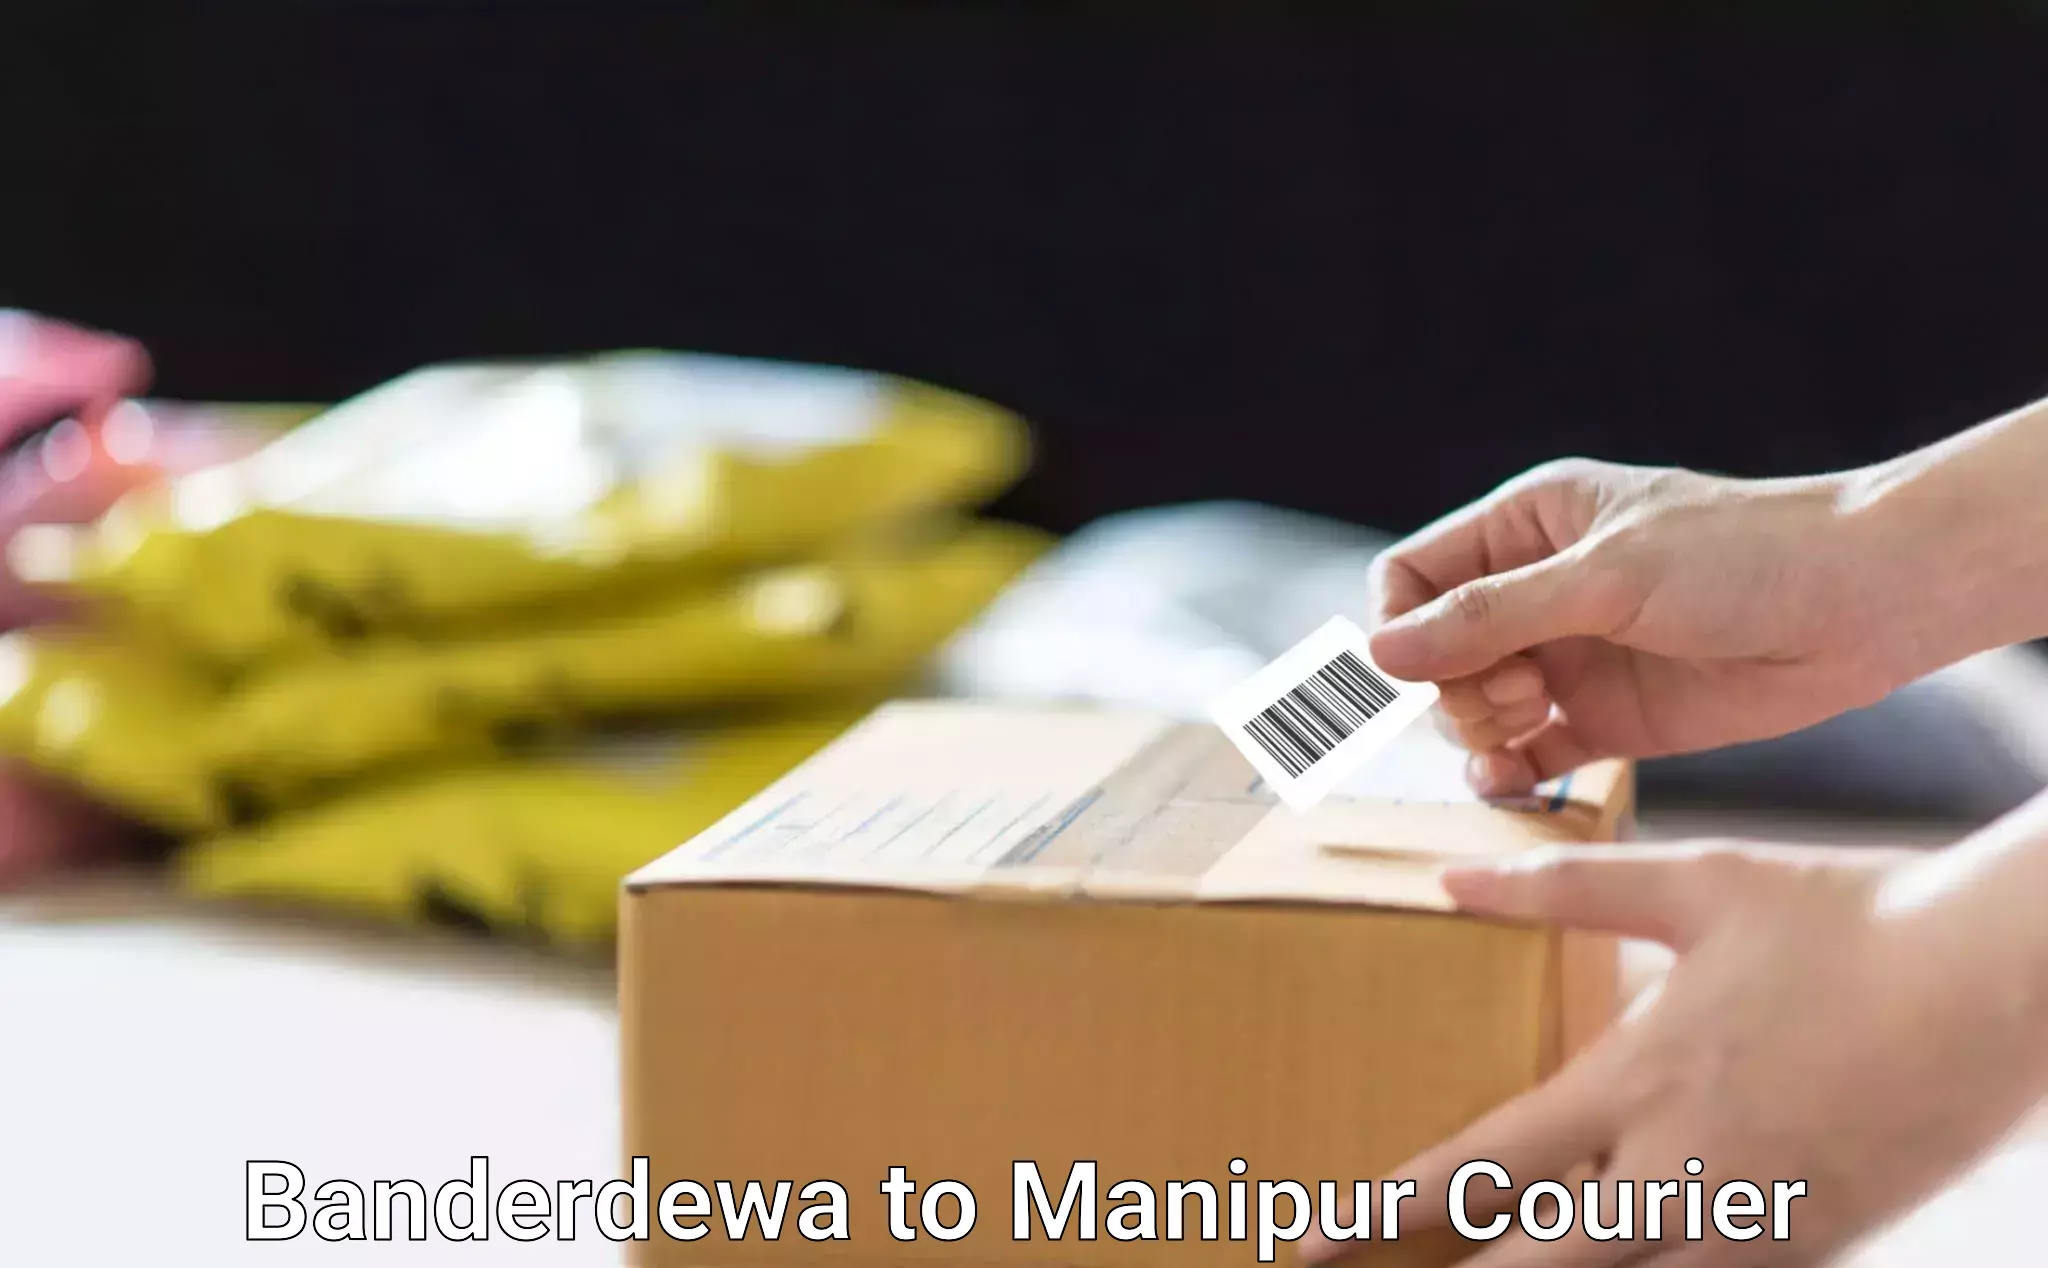 Logistics efficiency Banderdewa to Manipur